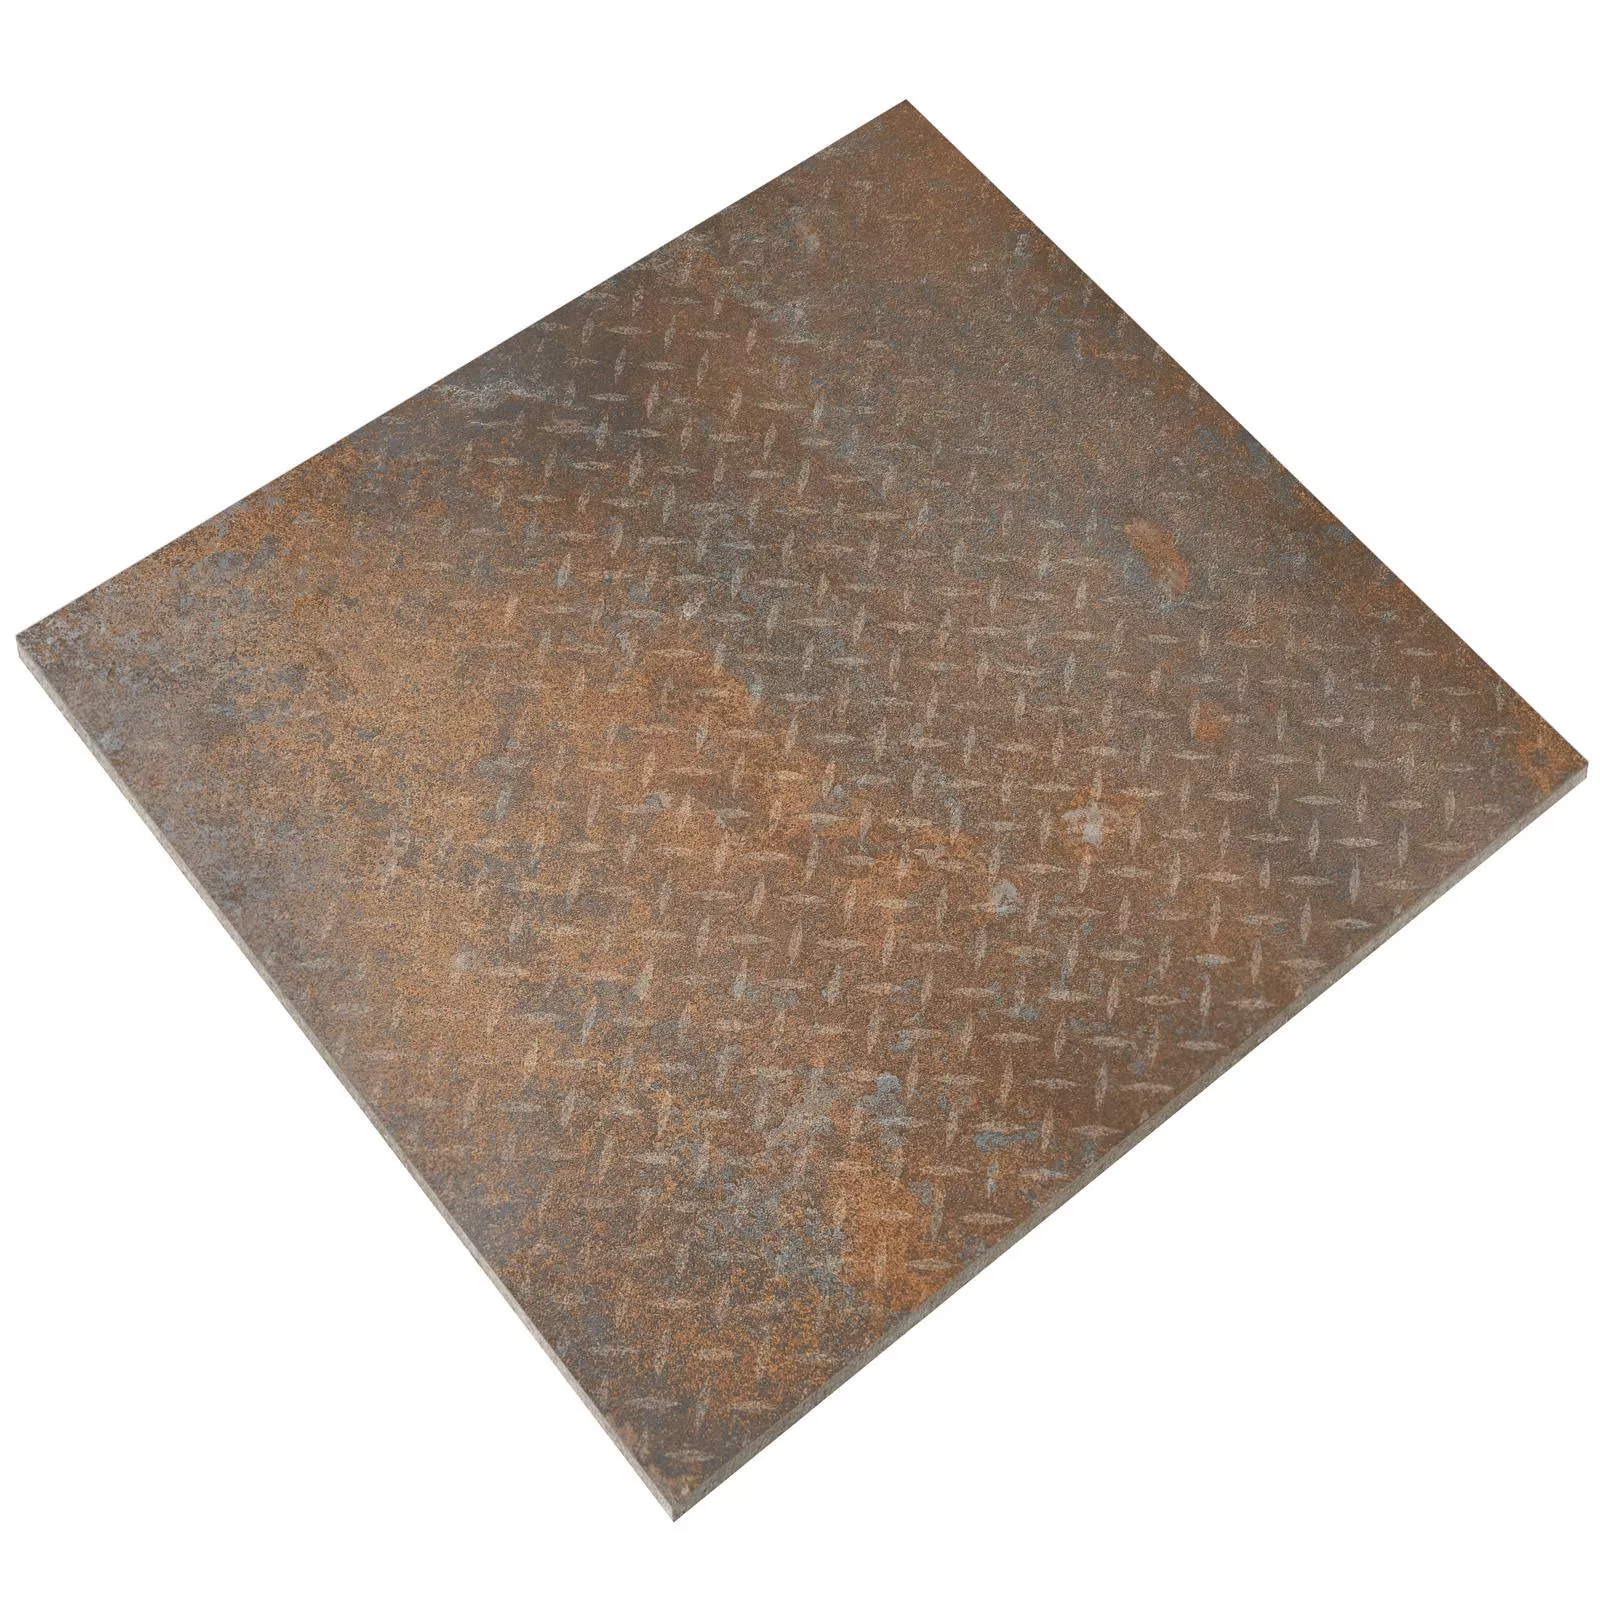 Πλακάκια Δαπέδου Sierra Μεταλλική Εμφάνιση Rust R10/B Ντεκόρ Φύλλο Φακού